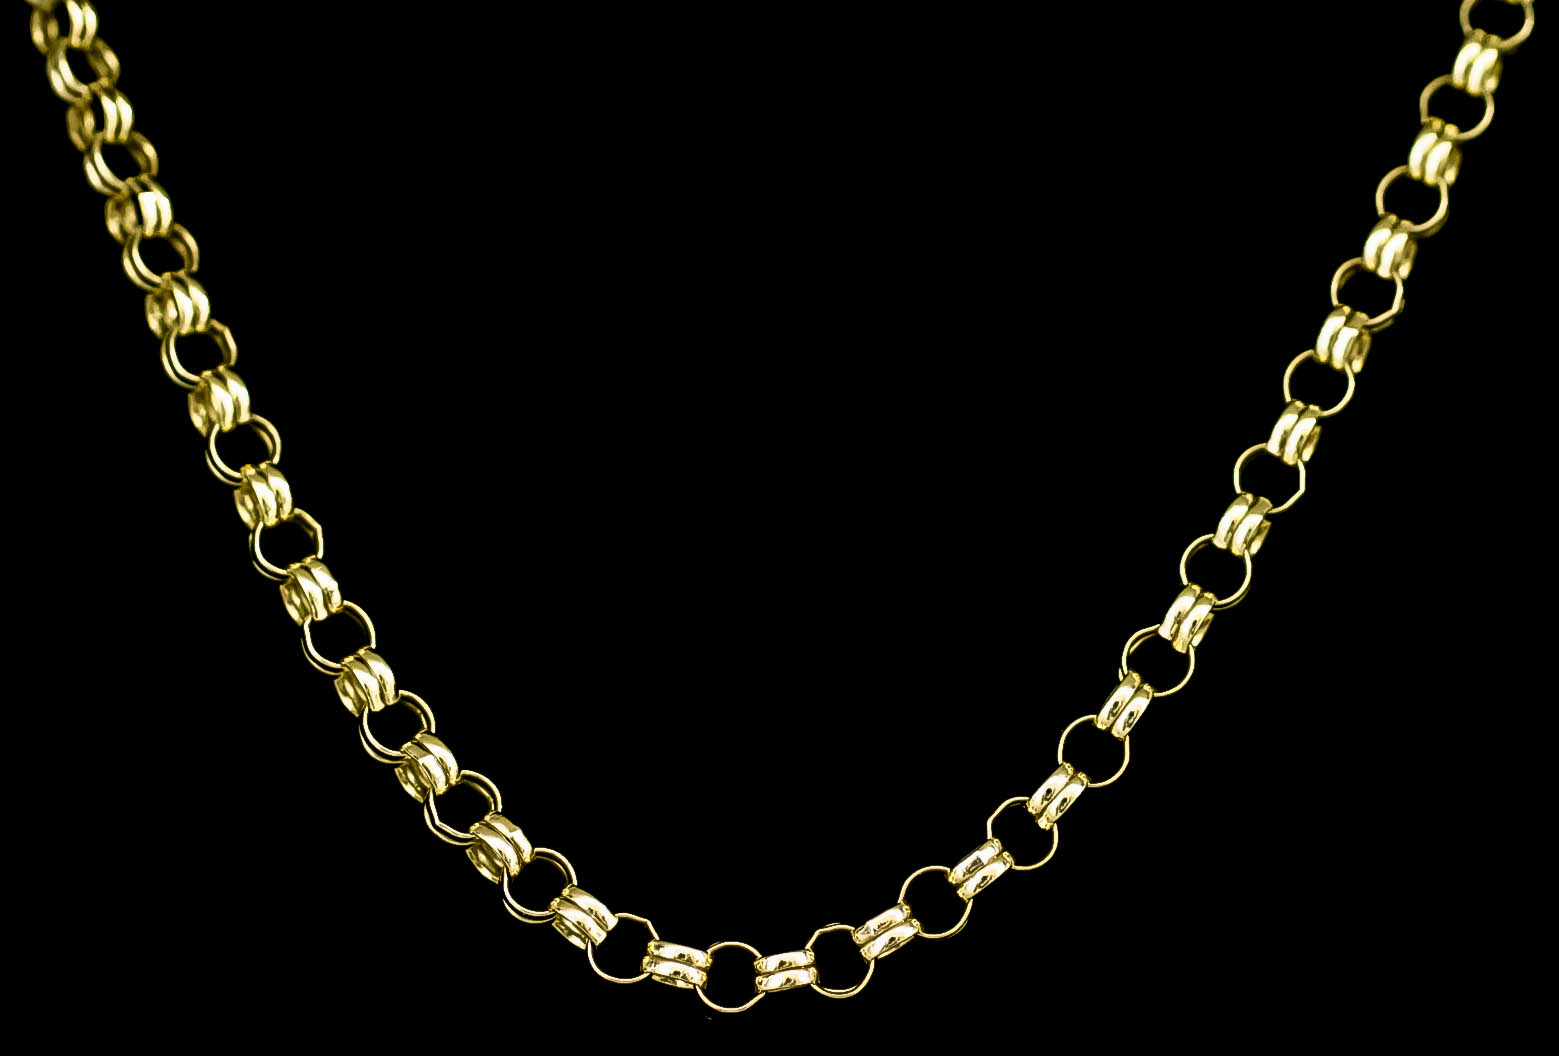 A 9ct Gold Belcher Chain, Modern, 508mm overall, gross weight 12.8g